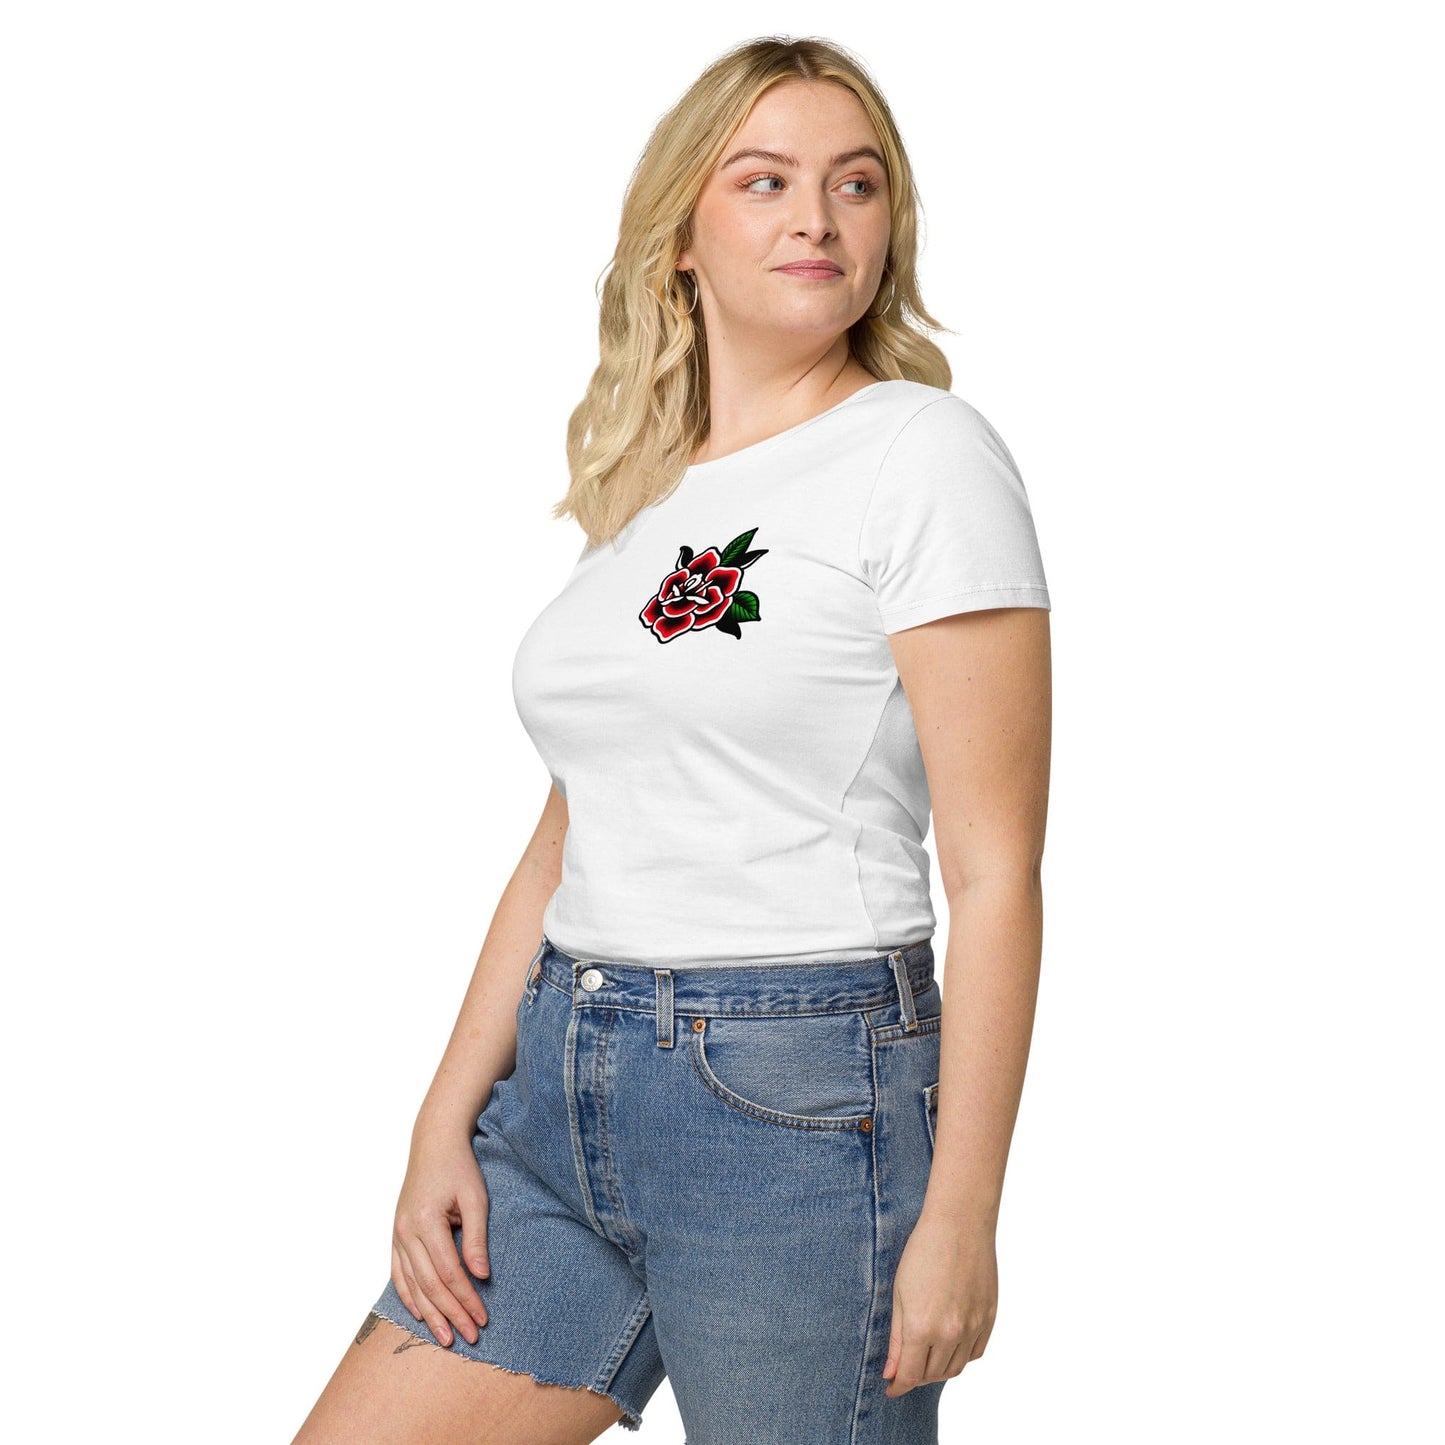 Women’s t-shirt "ROSE"